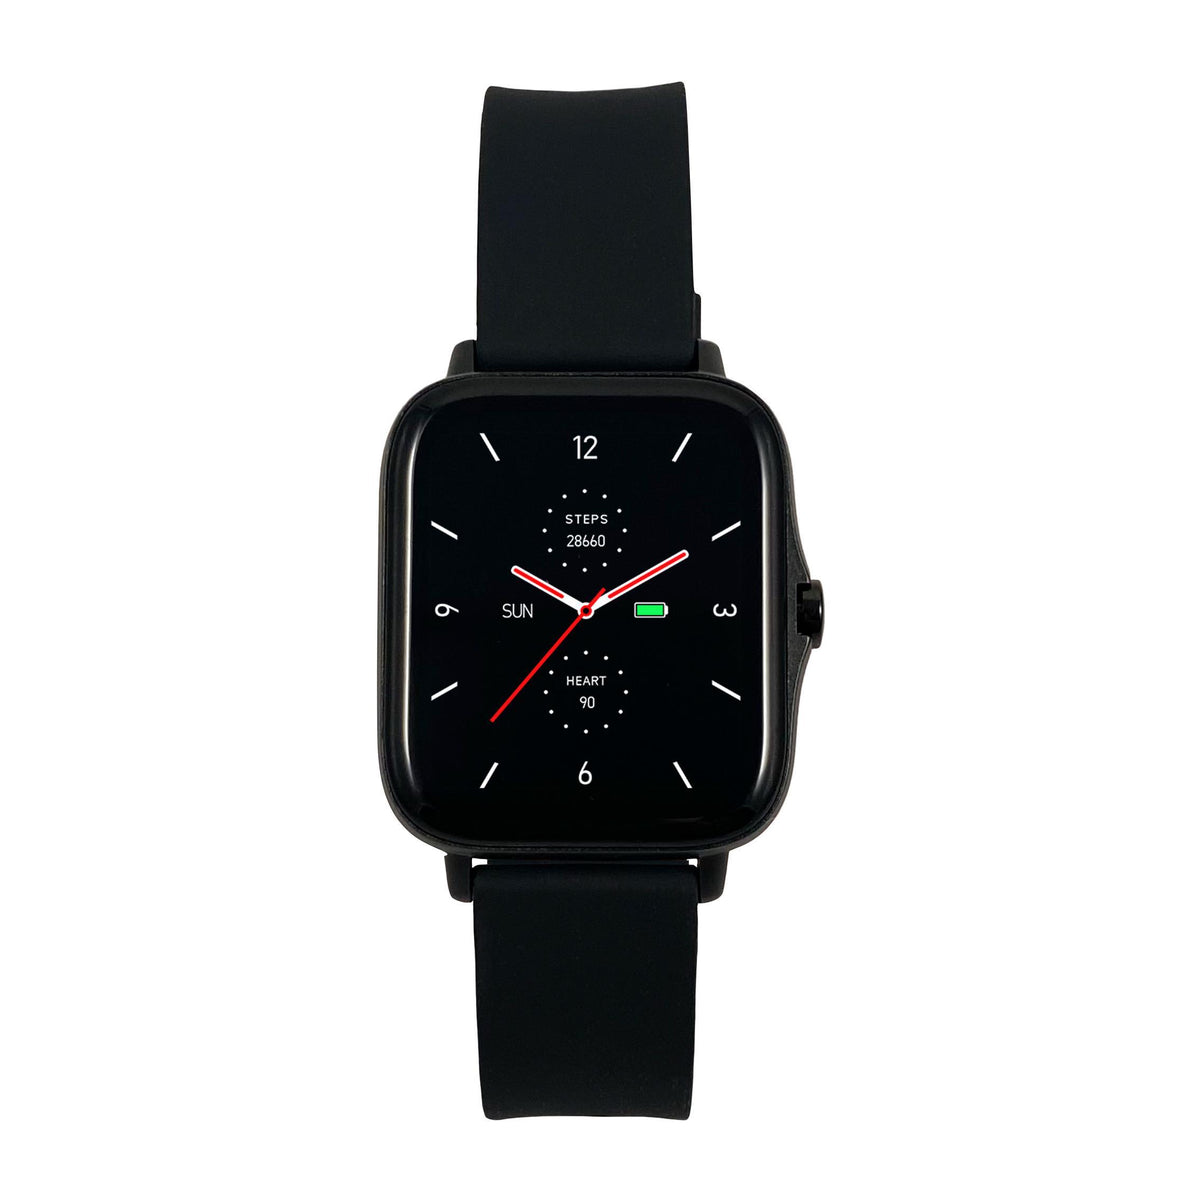 Smart hodinky Maxcom FIT FW55 AURUM PRO, čierna, 2x remienok